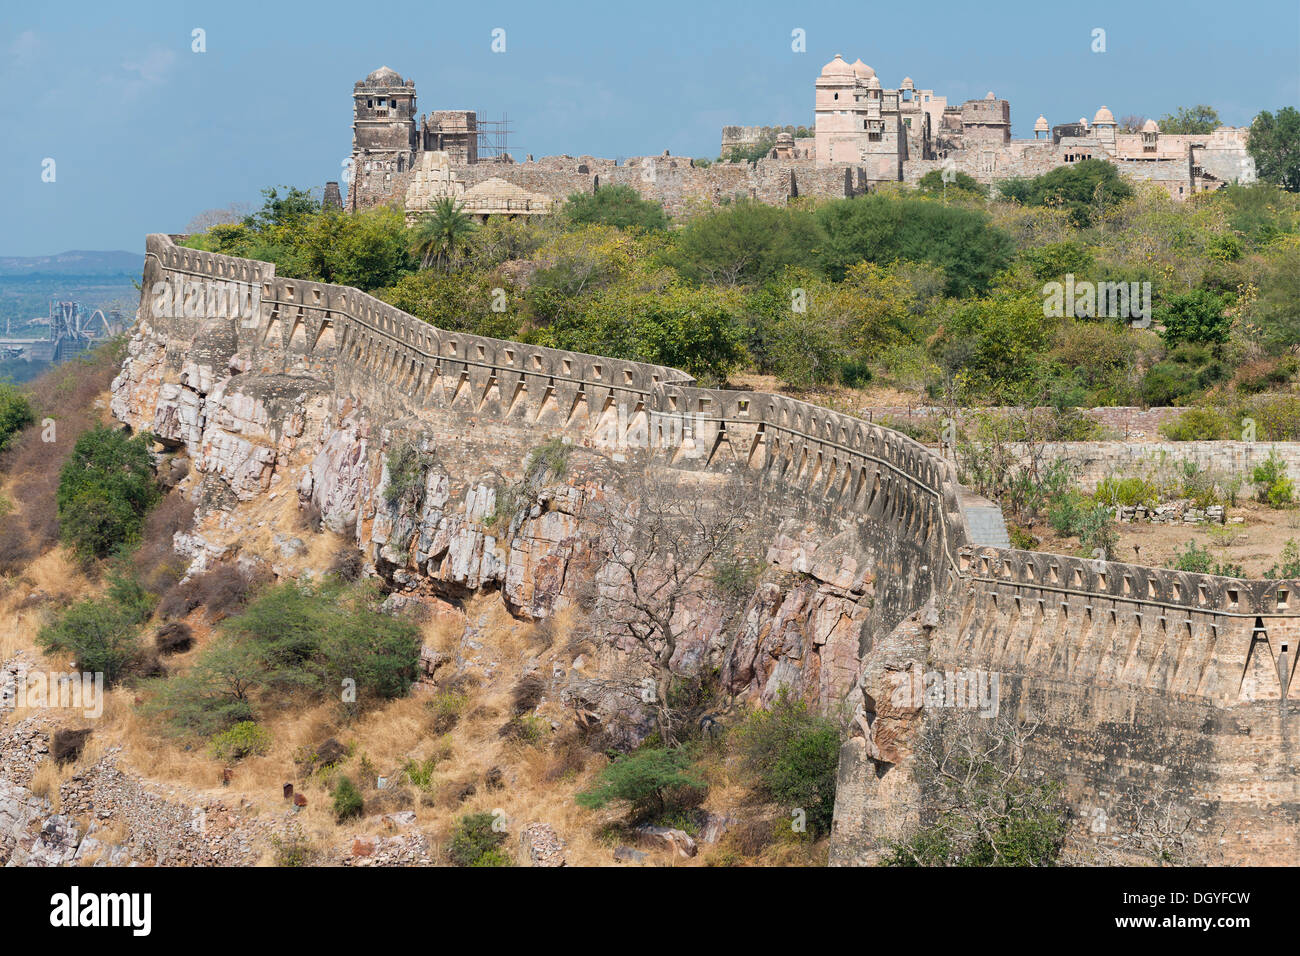 Festungsmauer, Chittorgarh Fort der Hindu Rajput Fürsten, Chittorgarh, Rajasthan, Indien Stockfoto